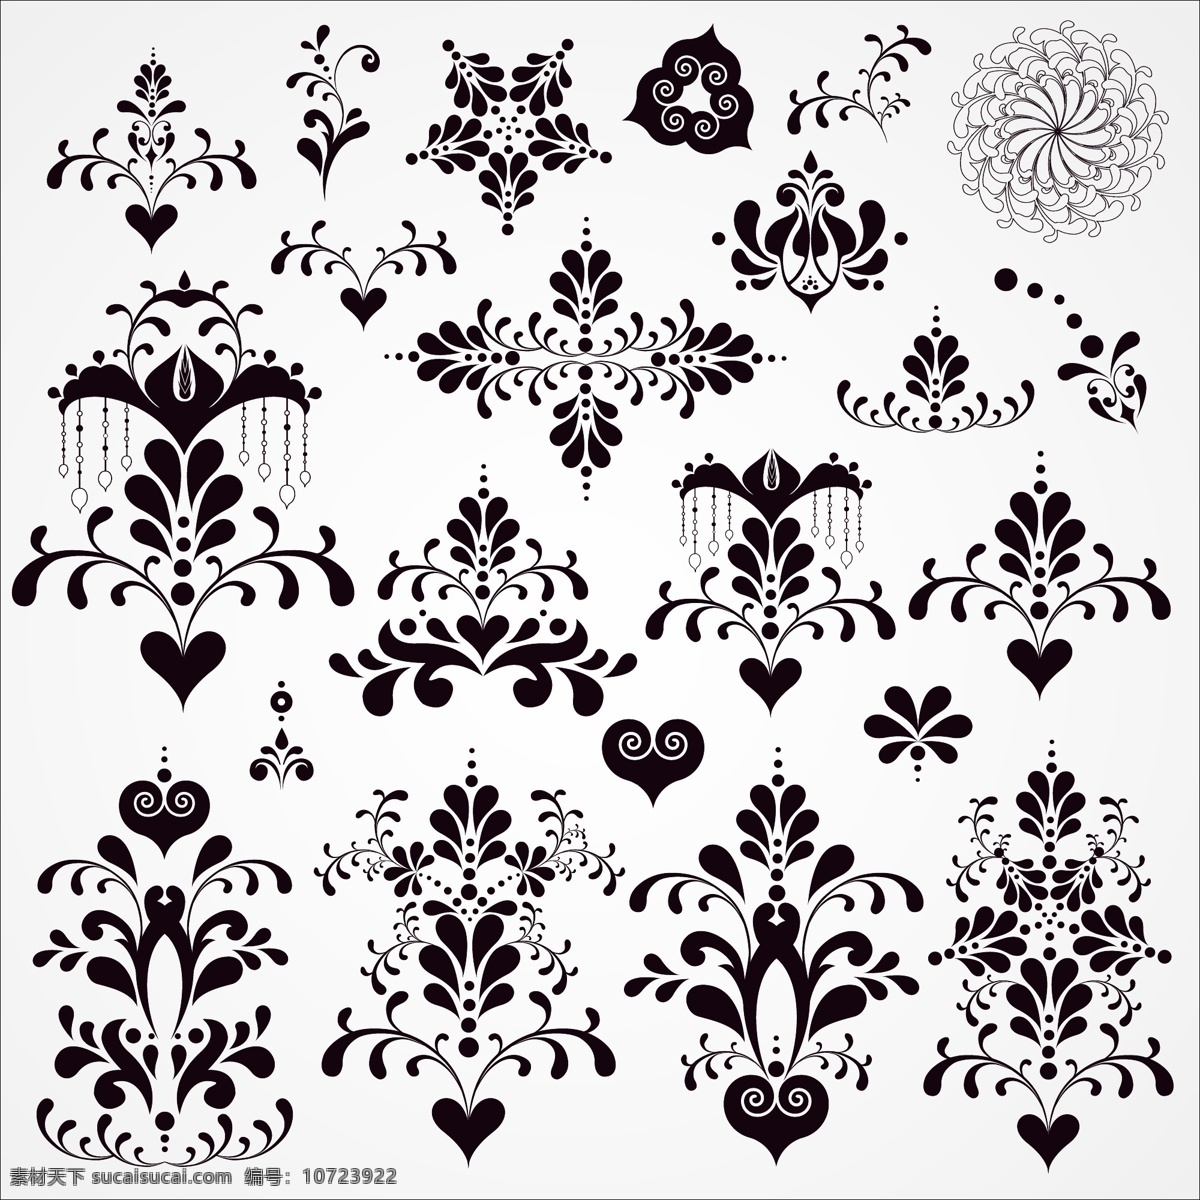 黑白 花纹 图案 华丽 黑白花纹 矢量素材 纹样 线稿 矢量图 花纹花边